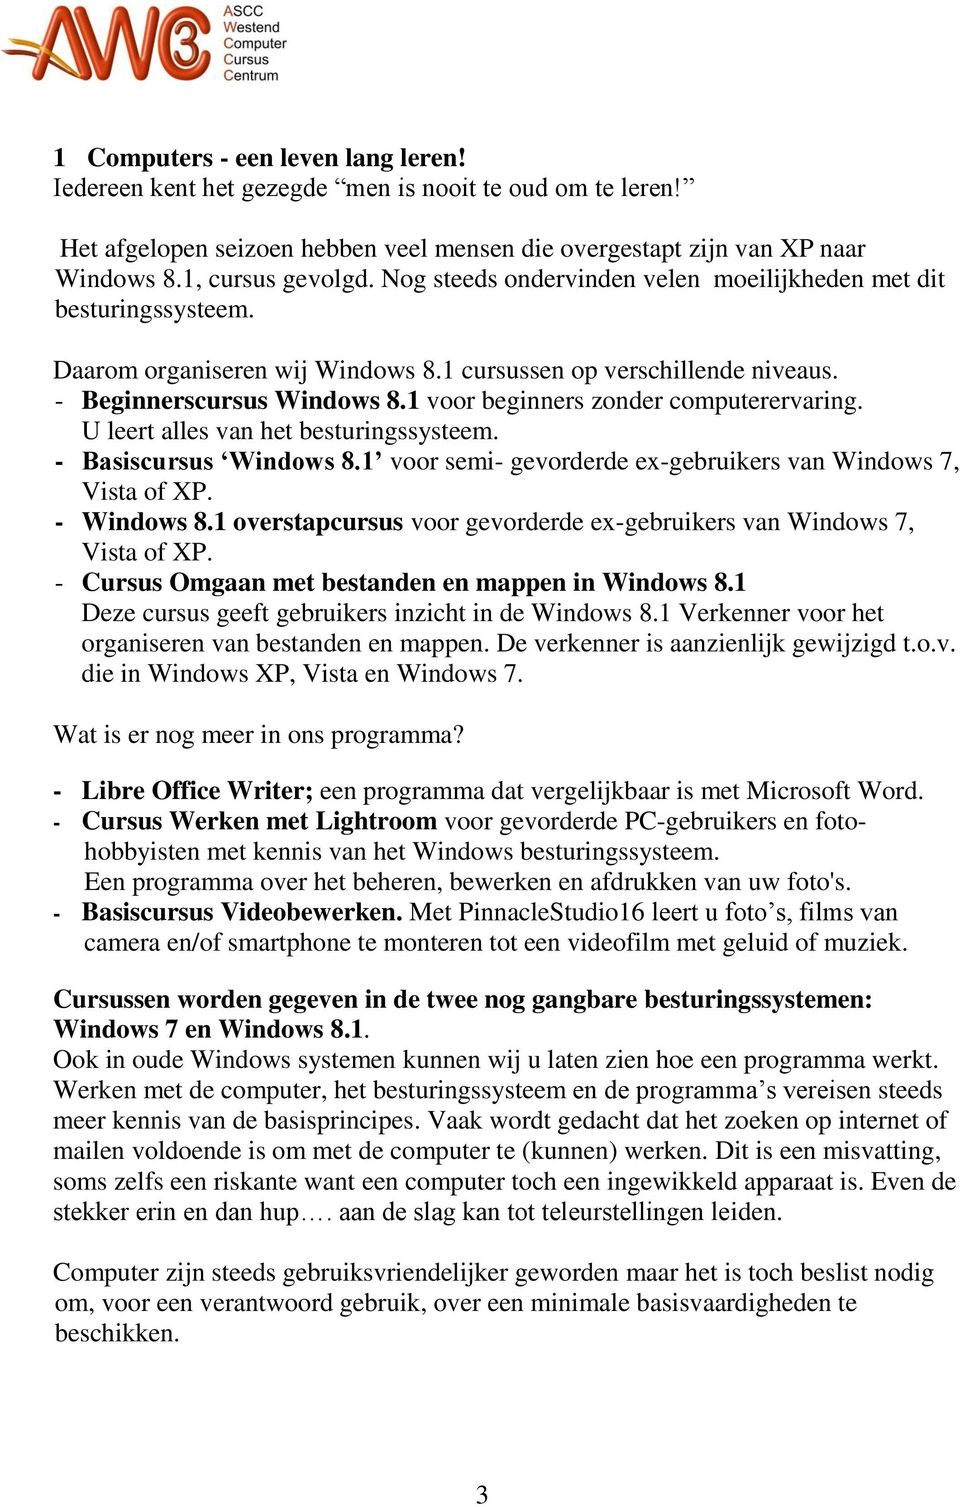 1 voor beginners zonder computerervaring. U leert alles van het besturingssysteem. - Basiscursus Windows 8.1 voor semi- gevorderde ex-gebruikers van Windows 7, Vista of XP. - Windows 8.